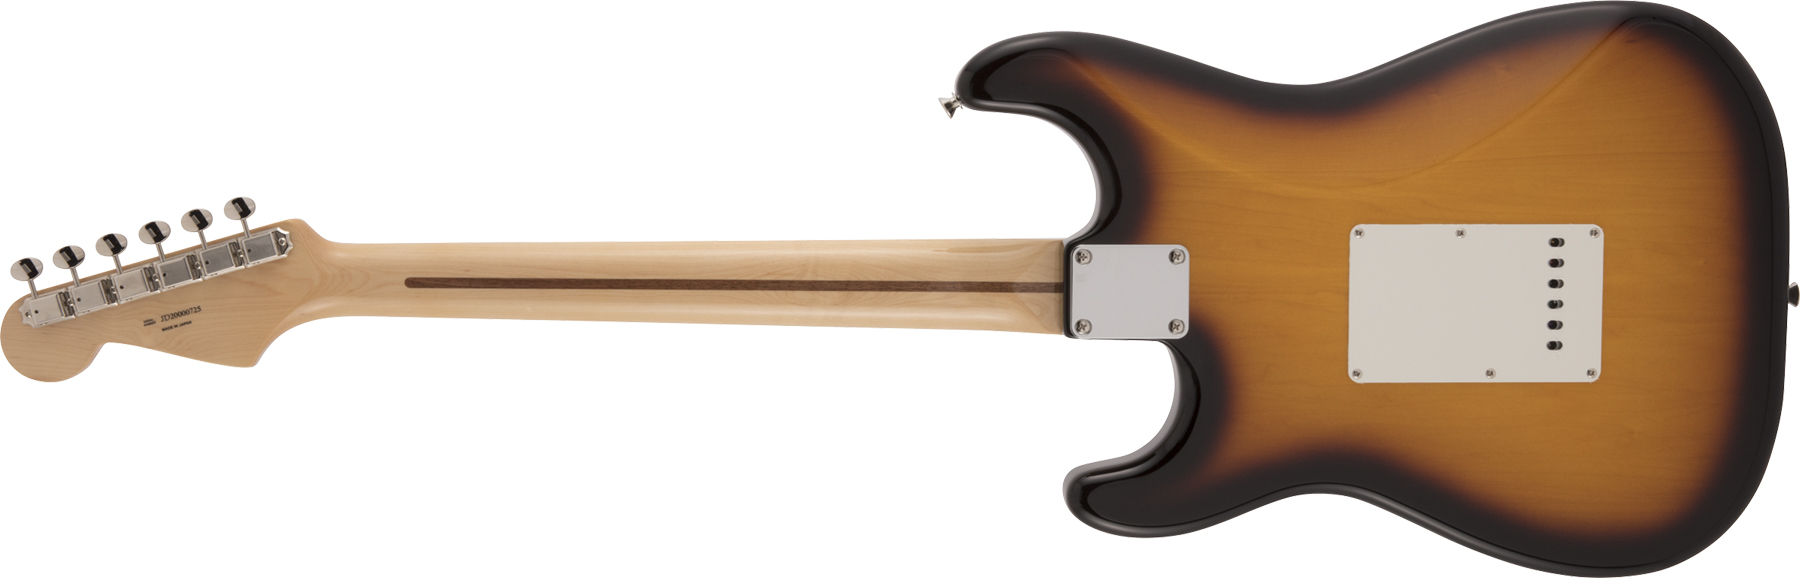 Fender Strat Traditional 50s Jap Mn - 2-color Sunburst - Elektrische gitaar in Str-vorm - Variation 1